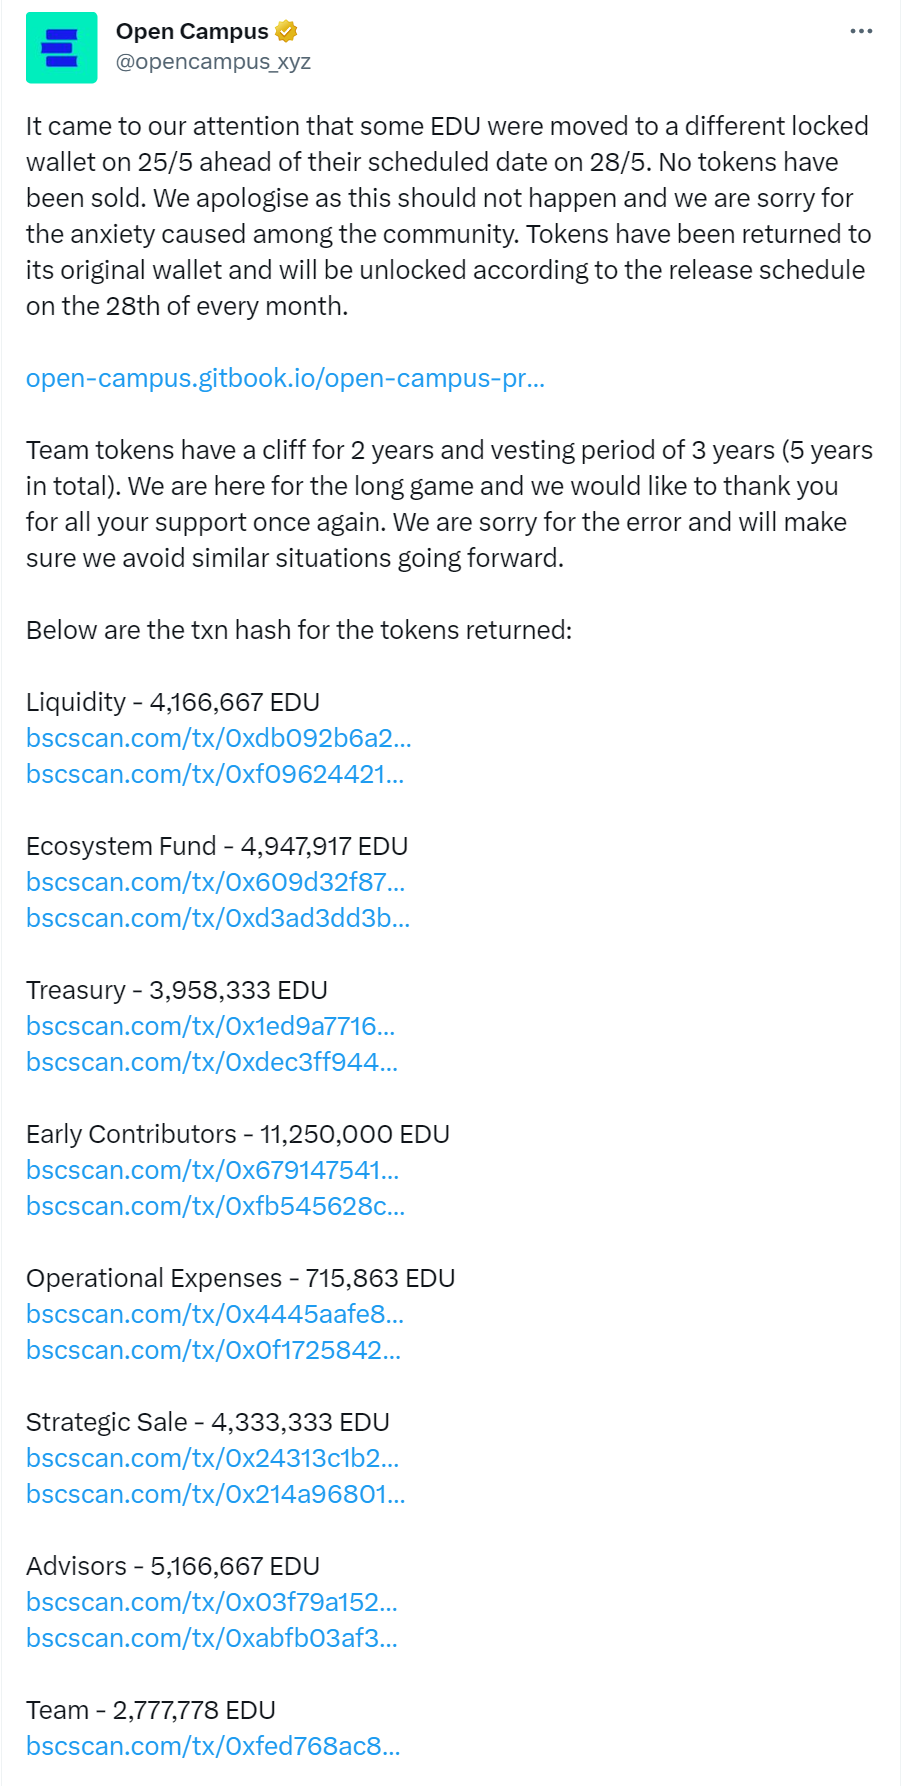 Open Campus回应EDU解锁前转移：没有代币被出售，已全部返还至原钱包，仍于每月28日解锁